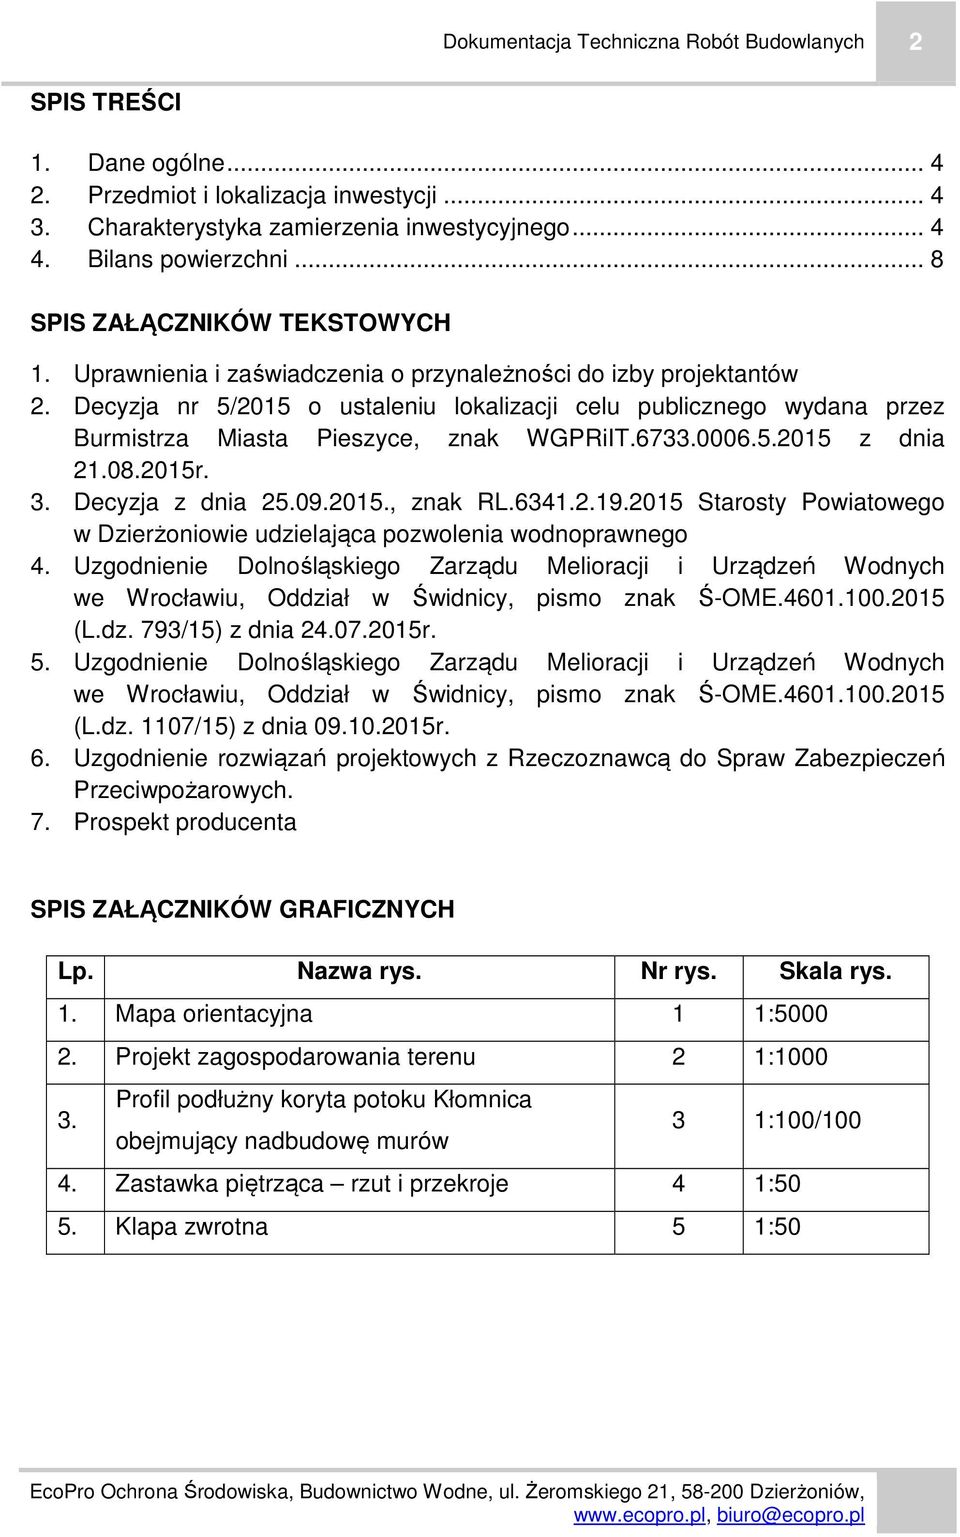 Decyzja nr 5/2015 o ustaleniu lokalizacji celu publicznego wydana przez Burmistrza Miasta Pieszyce, znak WGPRiIT.6733.0006.5.2015 z dnia 21.08.2015r. 3. Decyzja z dnia 25.09.2015., znak RL.6341.2.19.